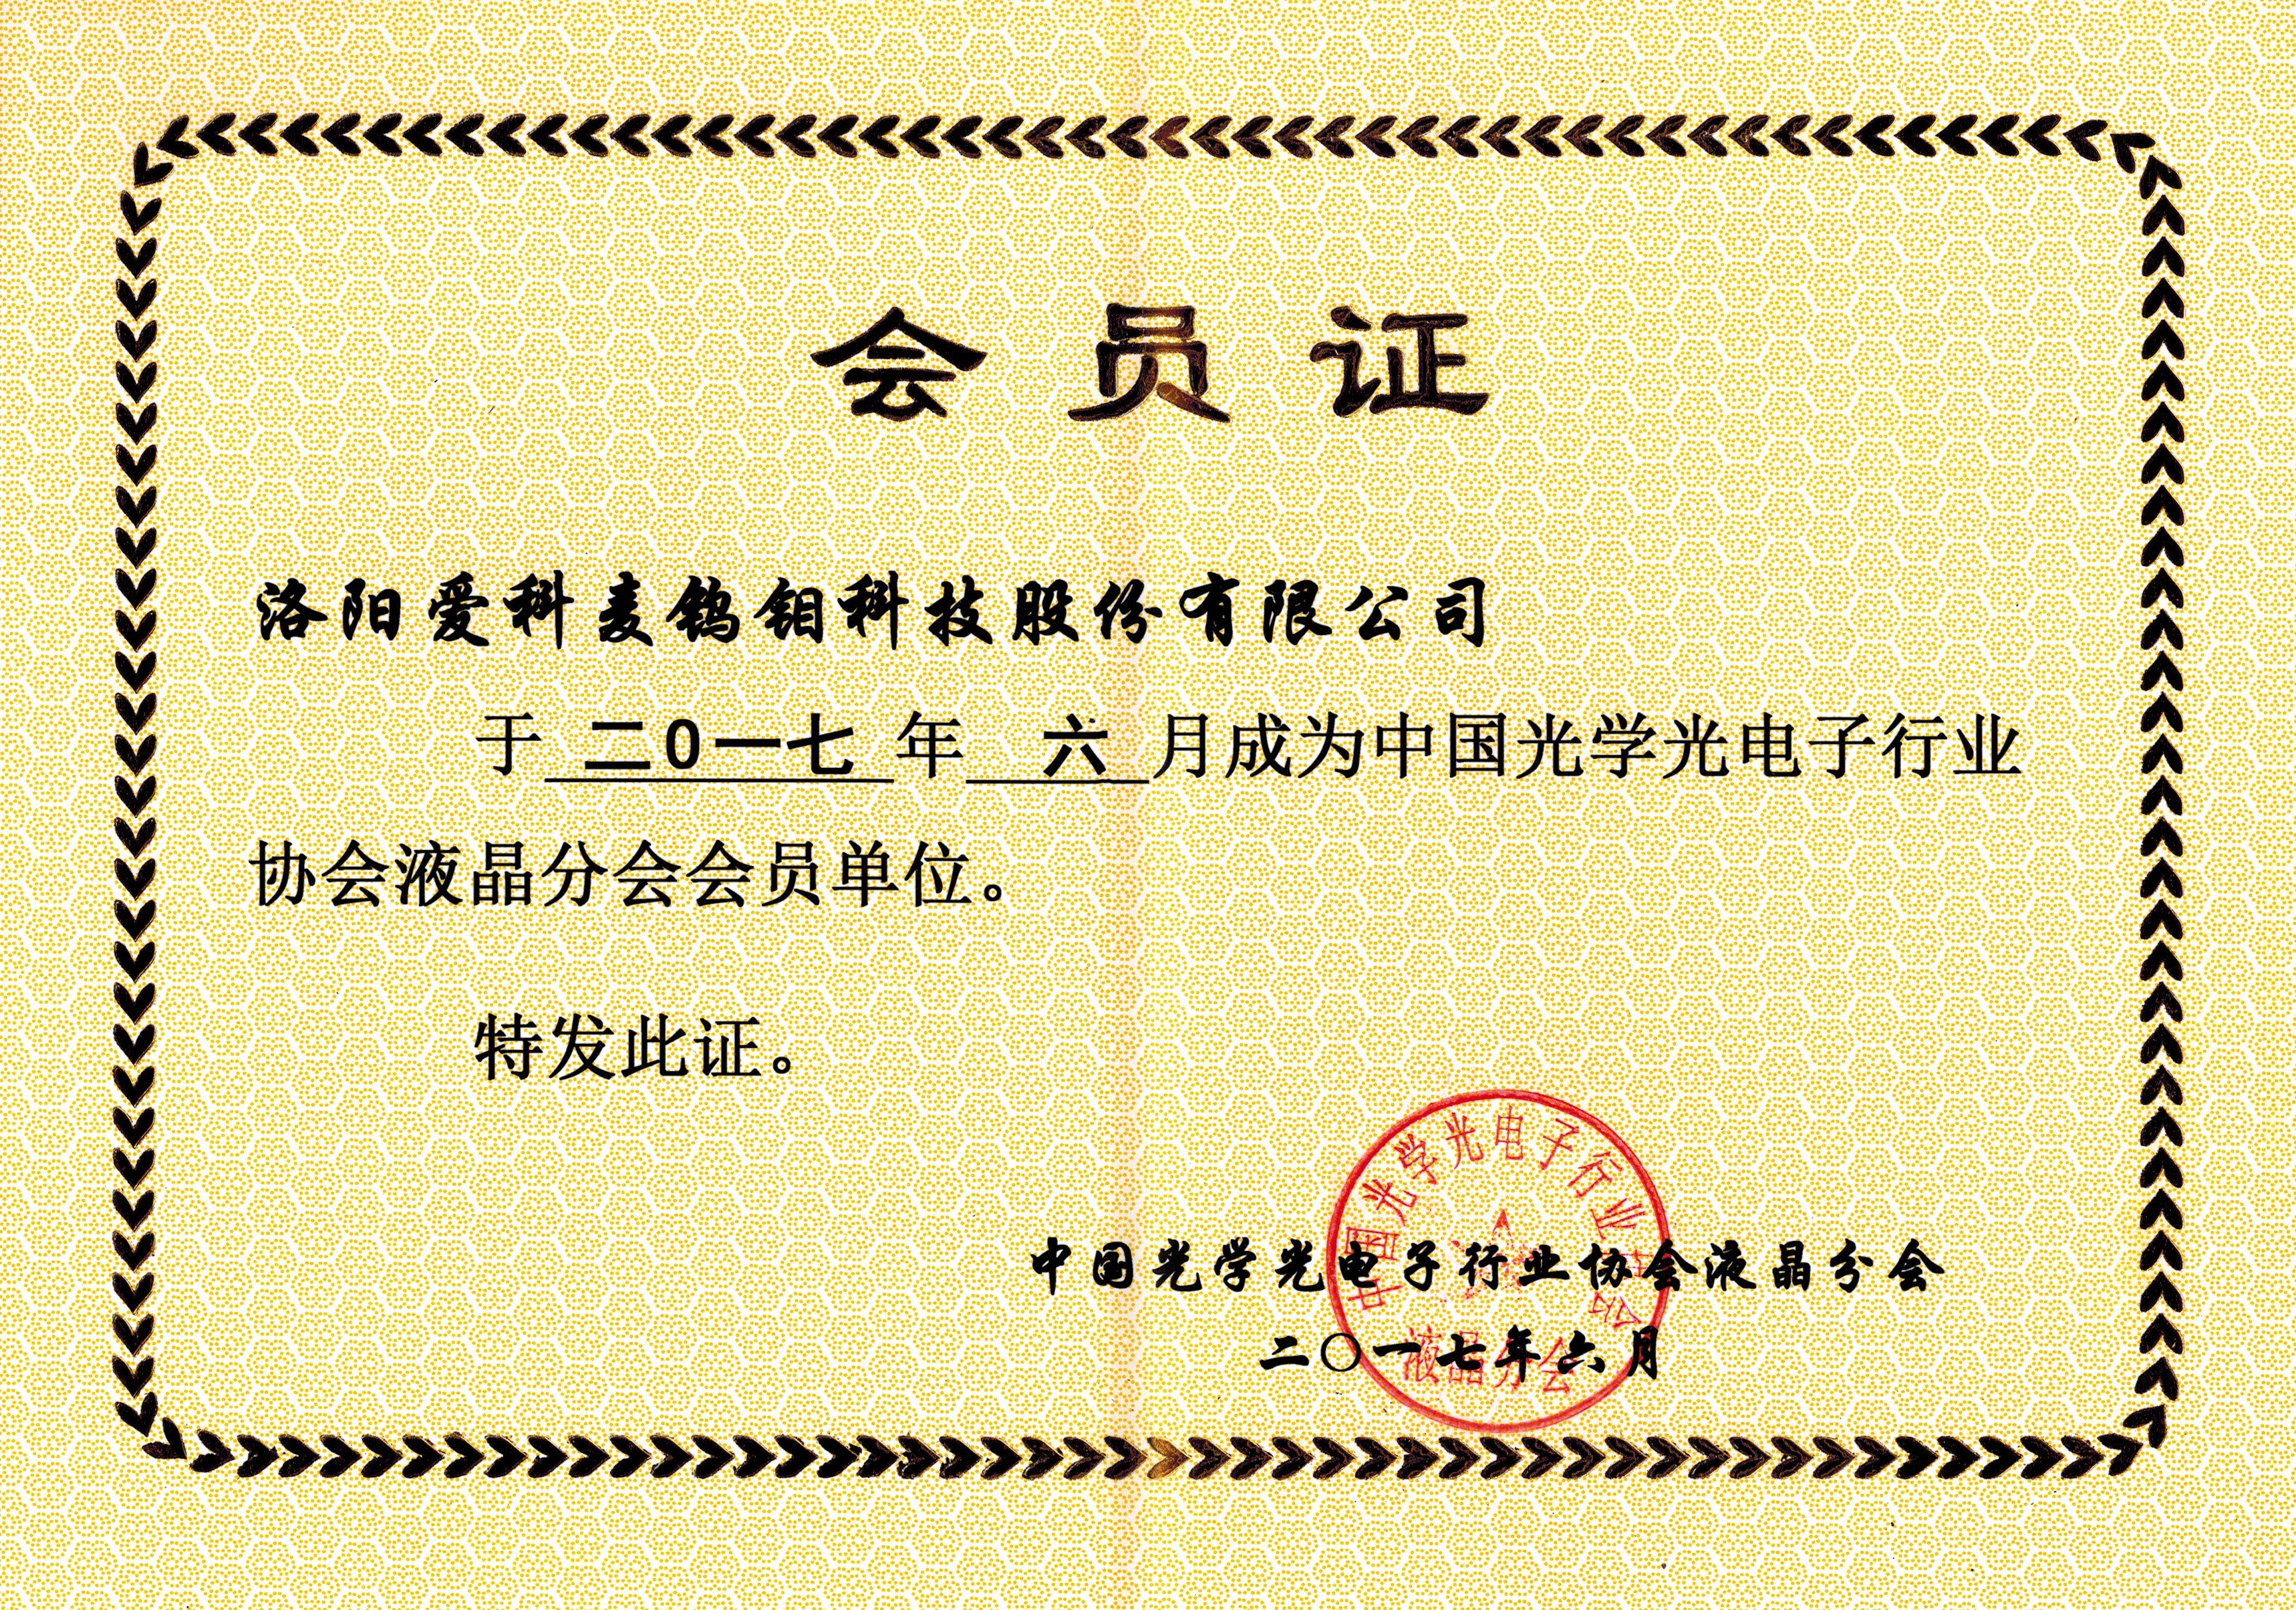 中國光學光電子行業協會液晶分會會員單位